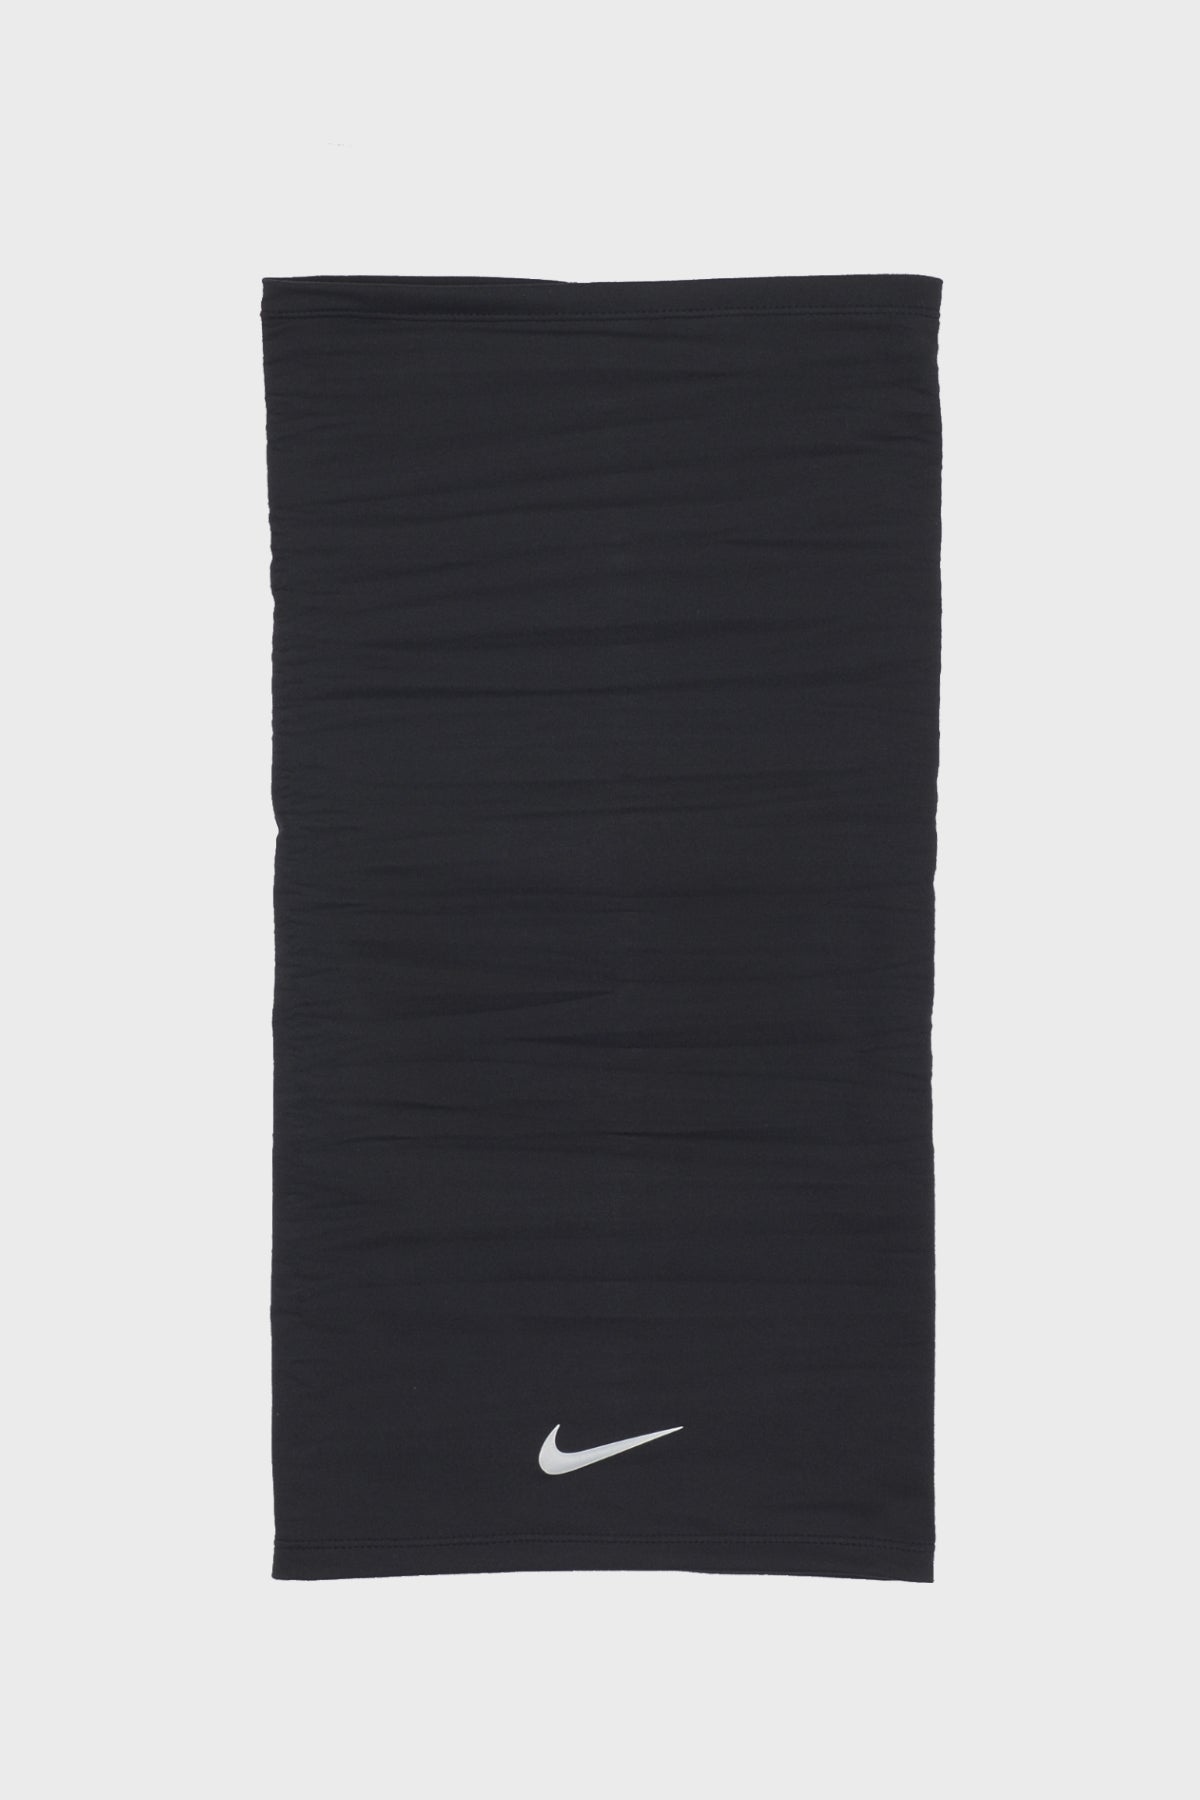 Nike - Dry Neck Wrap